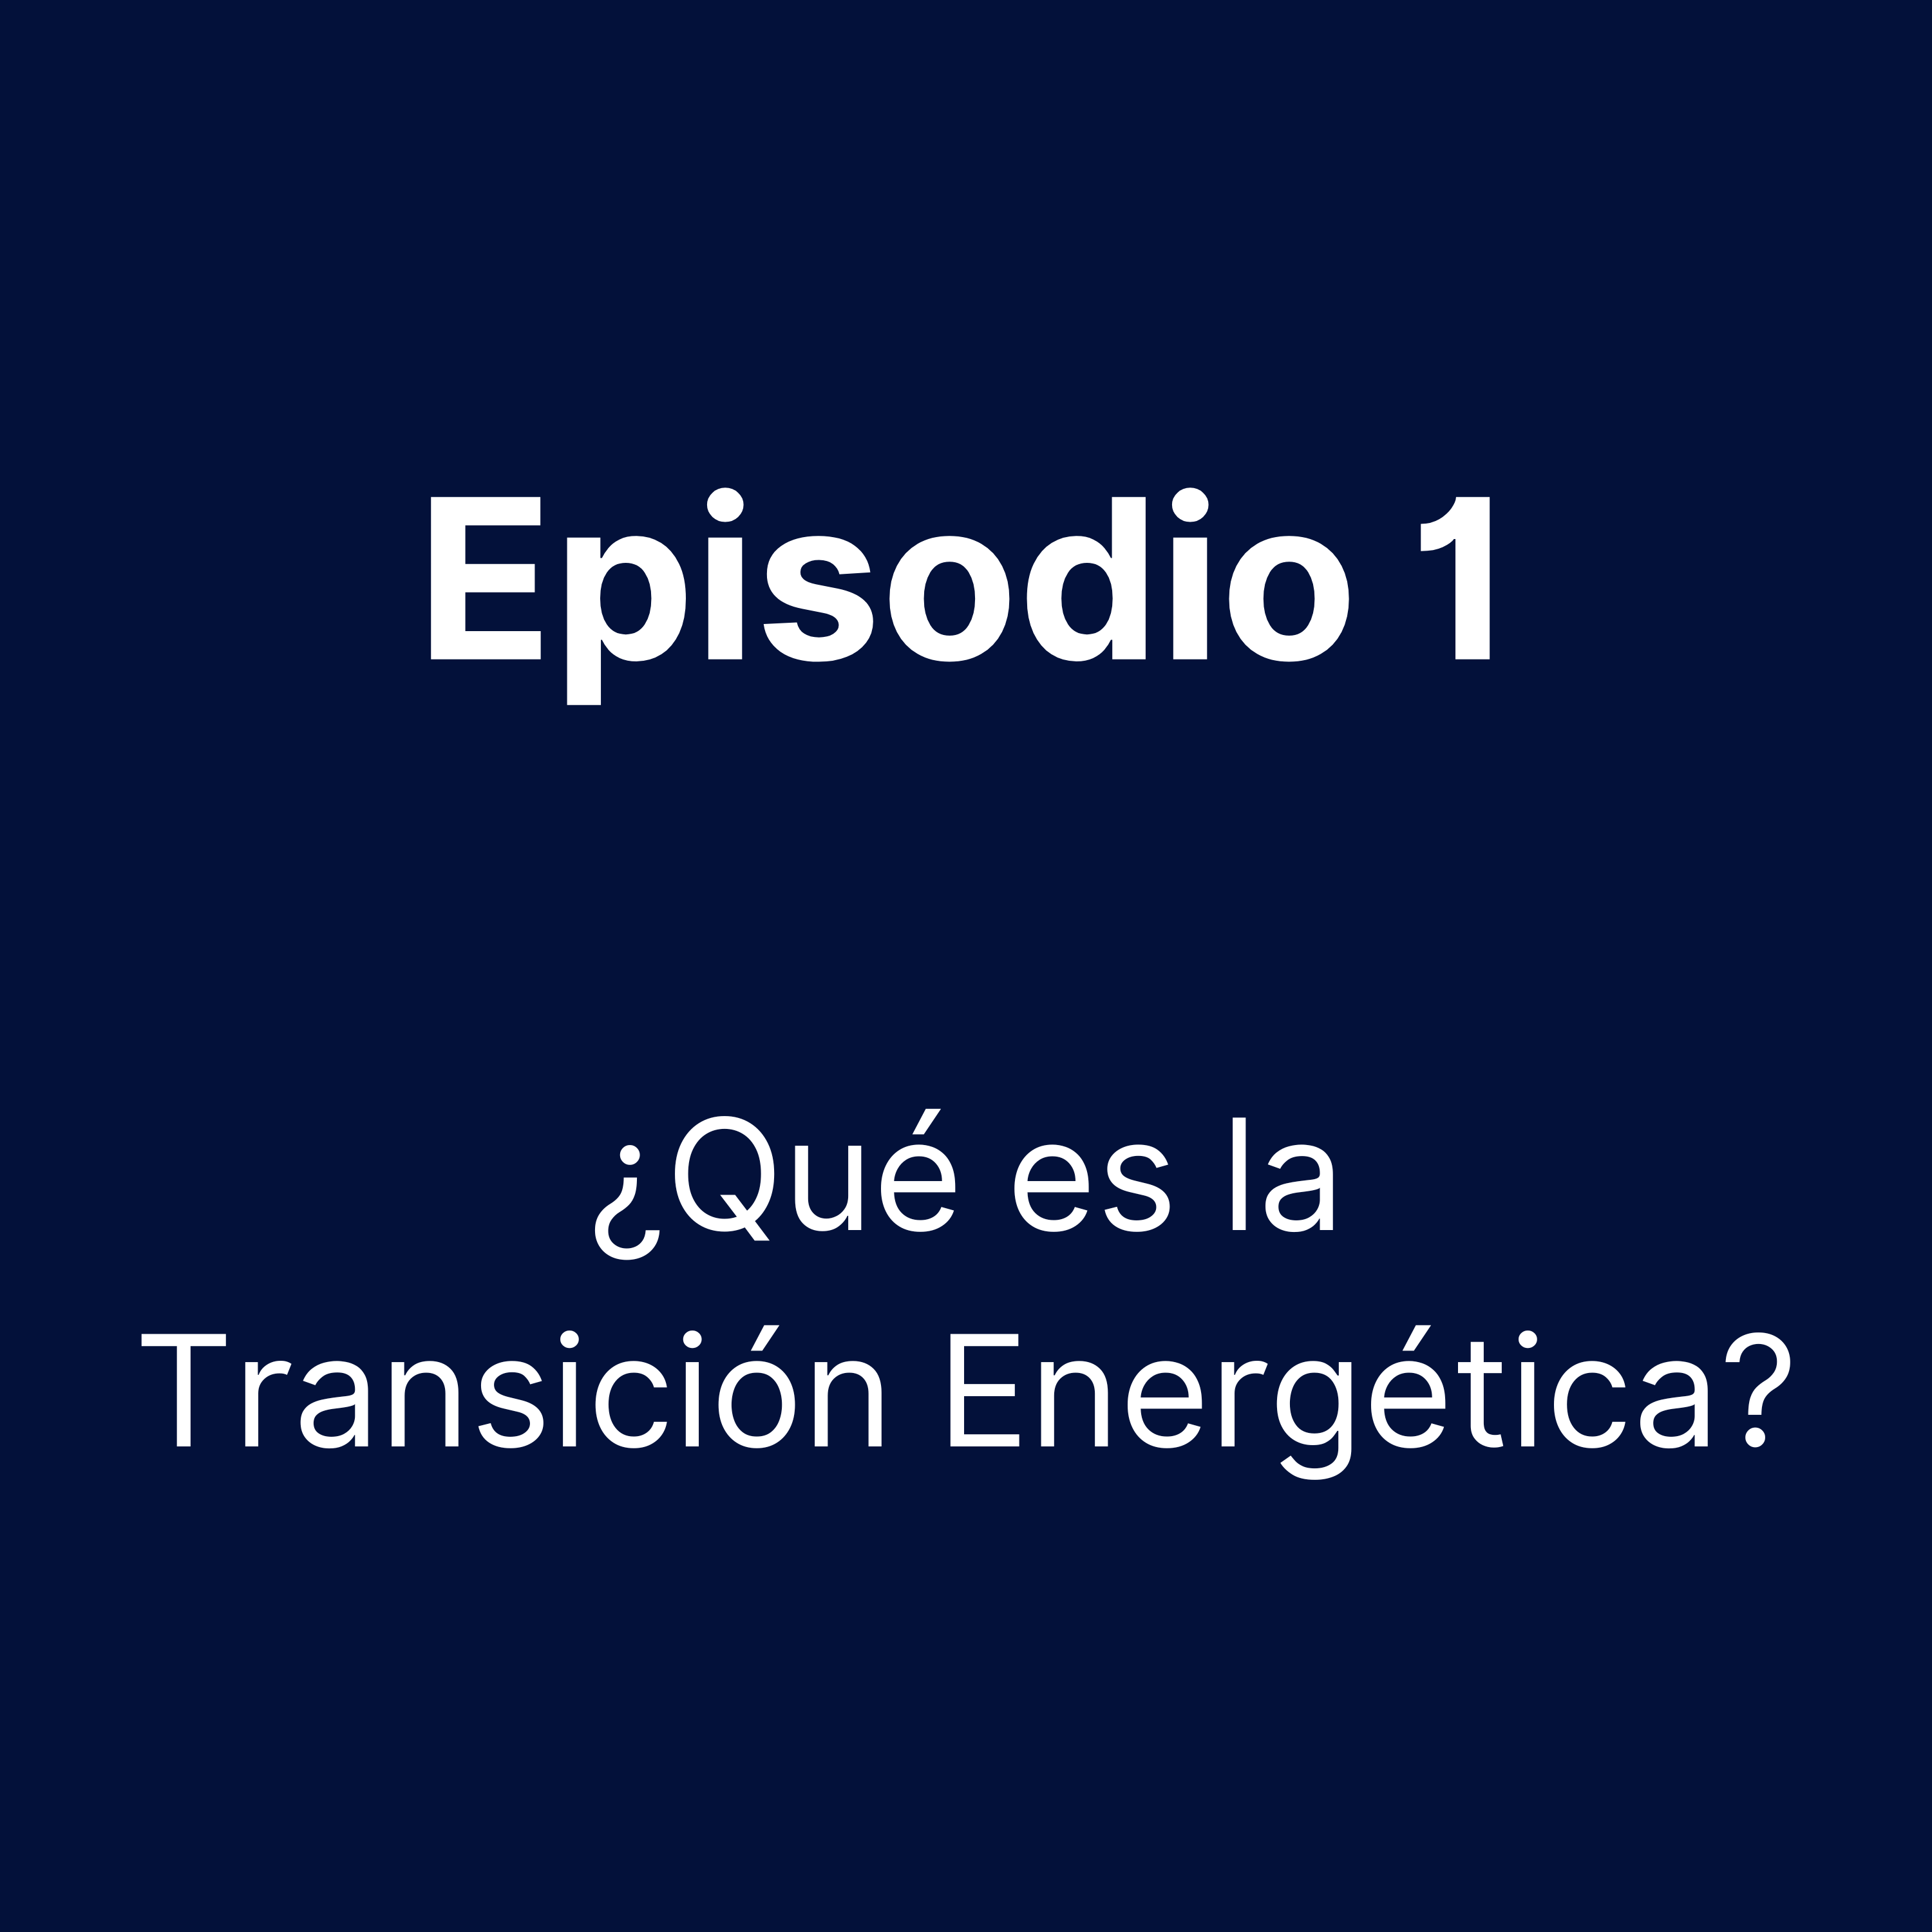 Episodio 1 - ¿Qué es la Transición Energética?